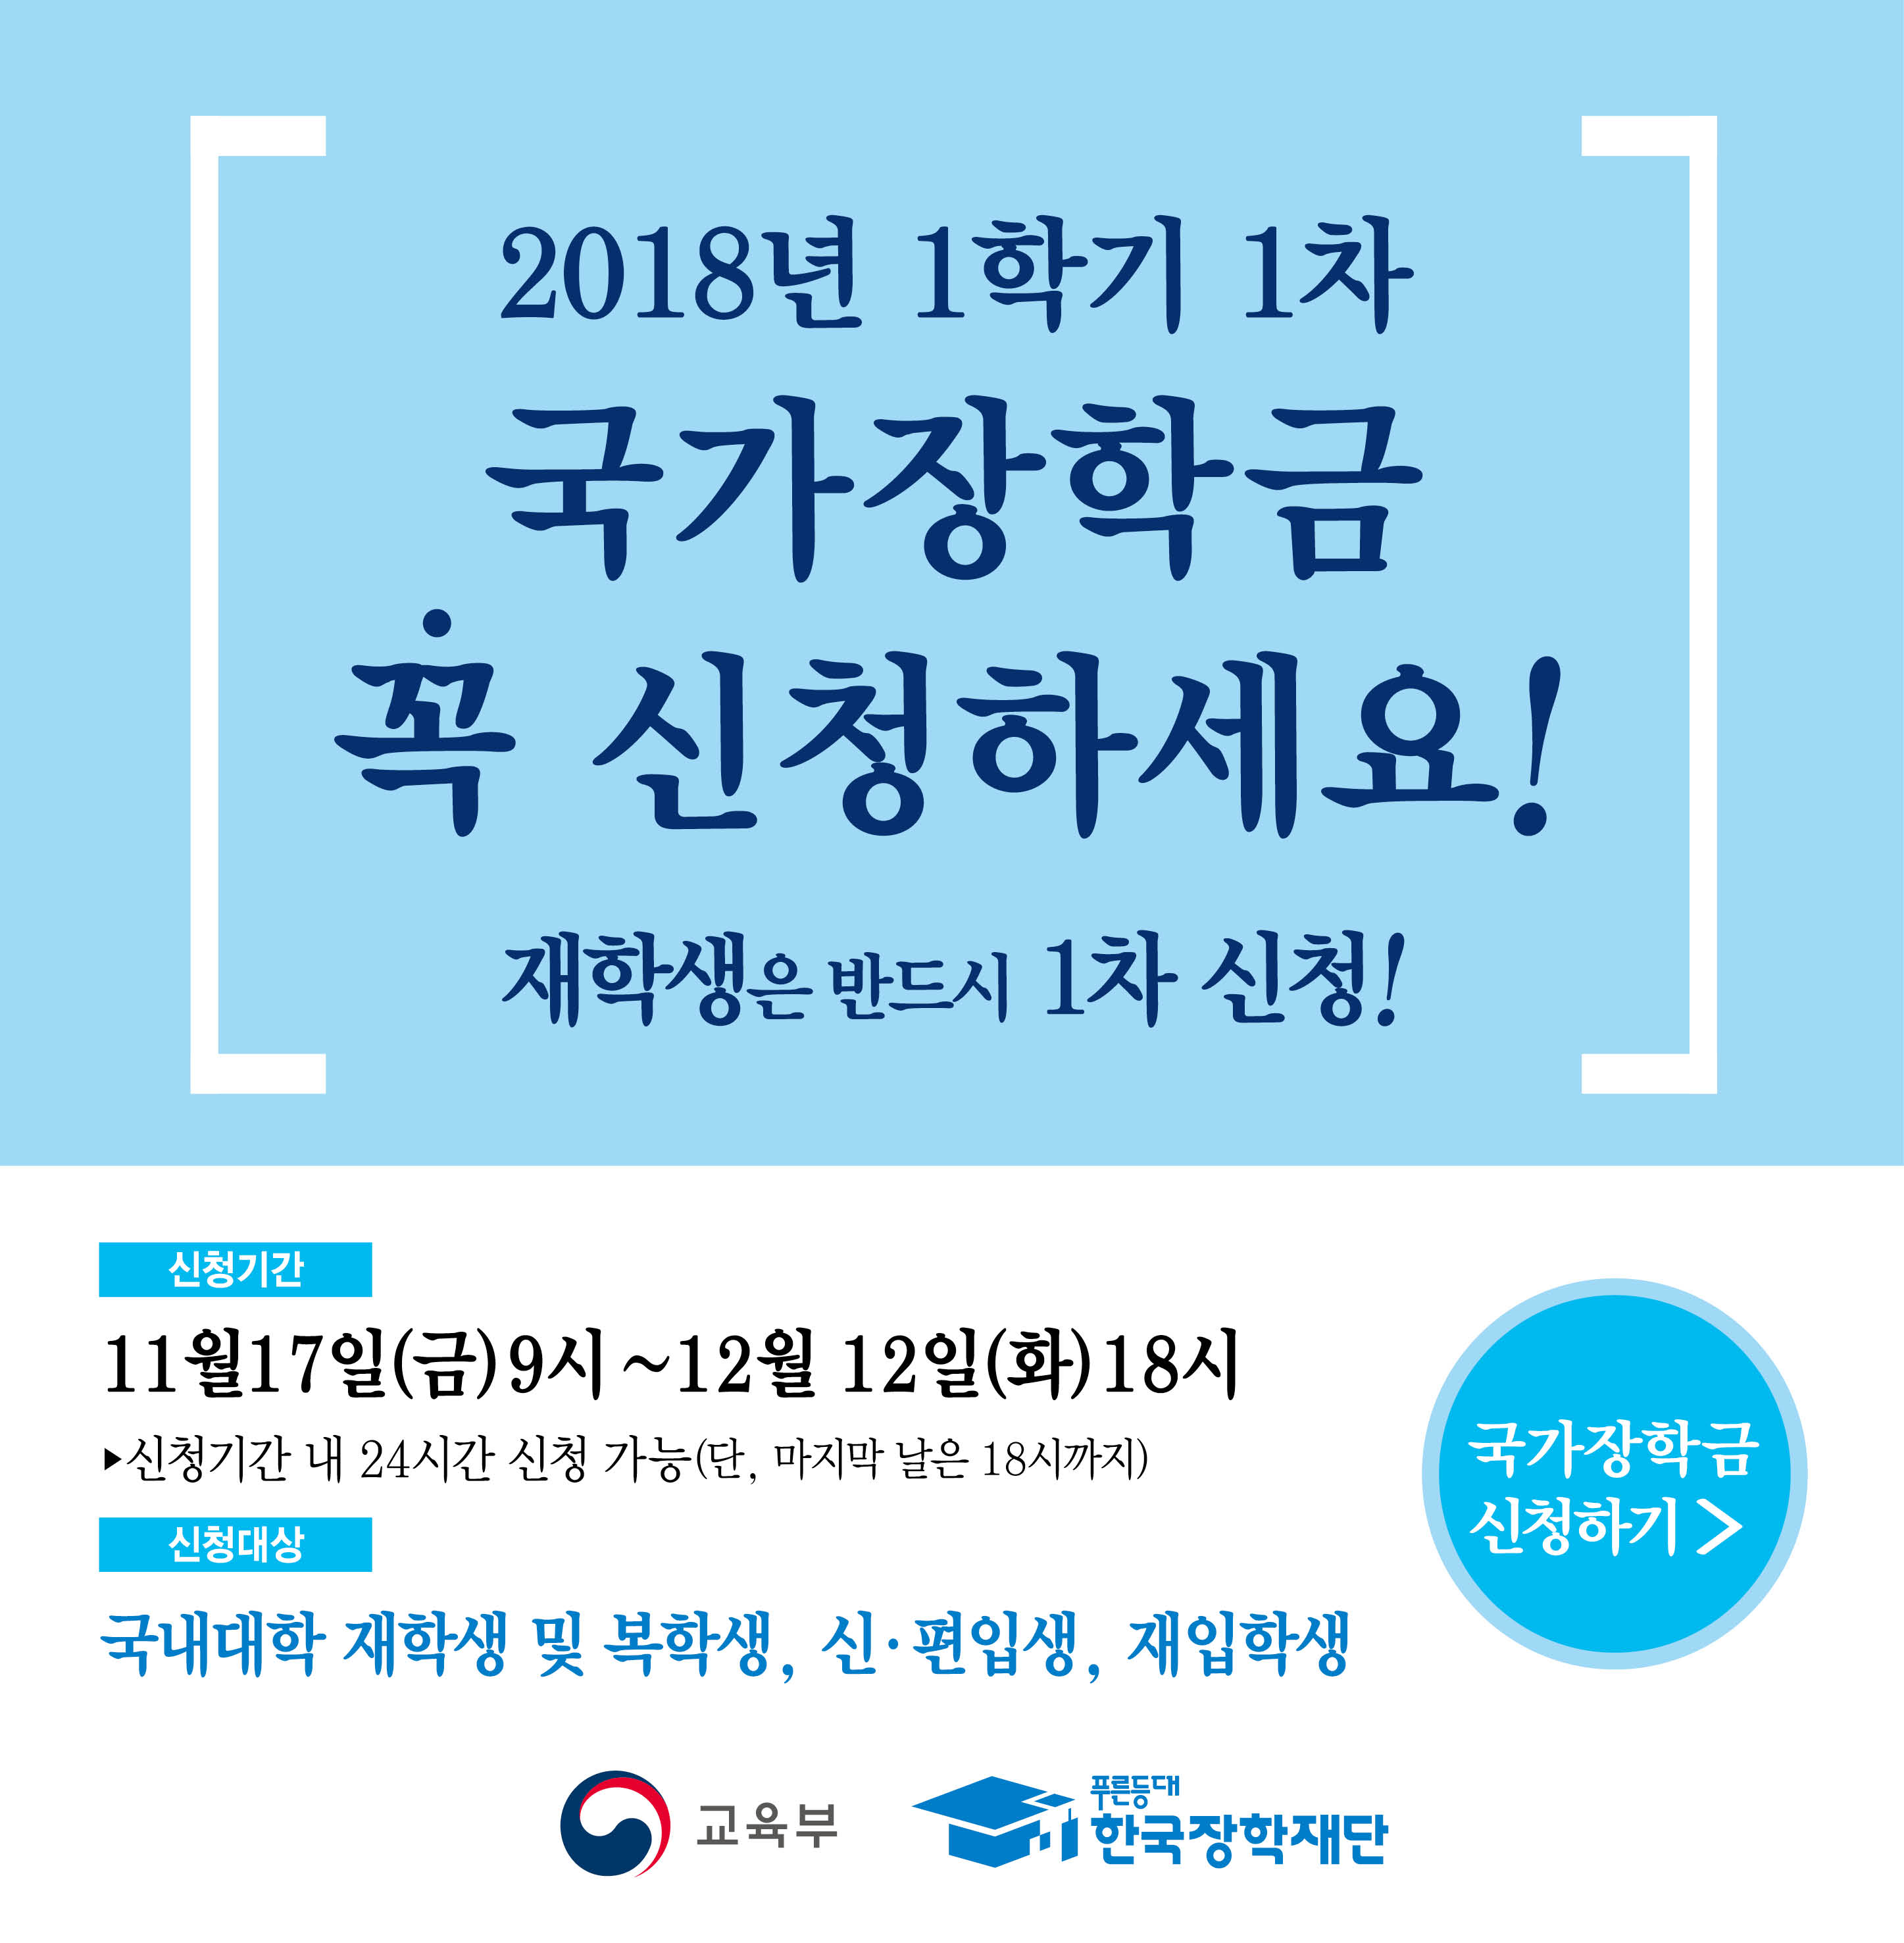 [중요]2018-1 국가장학금 1차 신청기간 안내